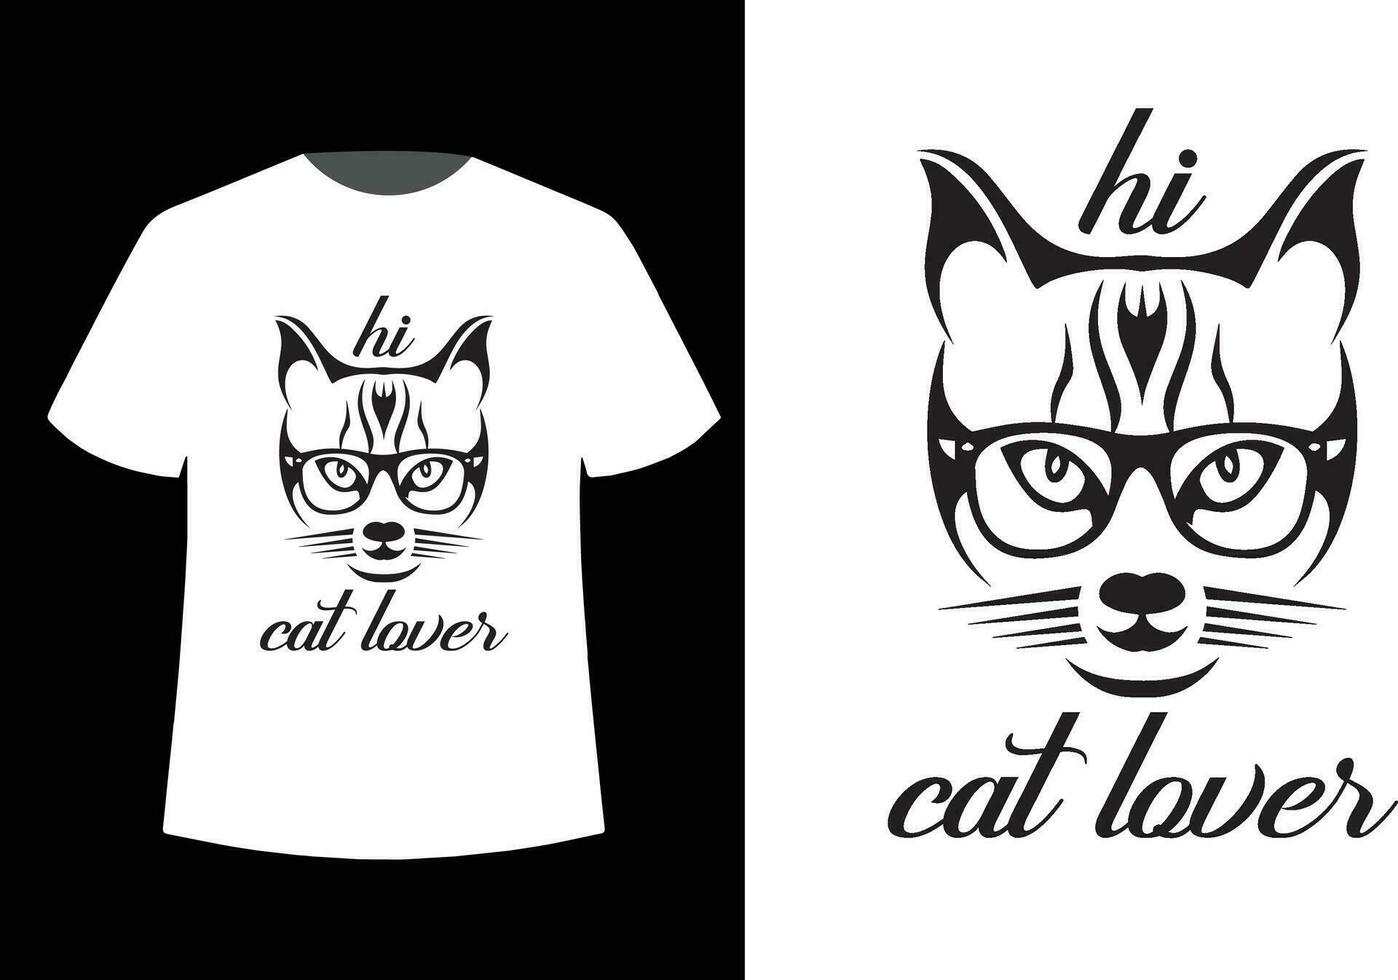 Cat lover tshirt design vector